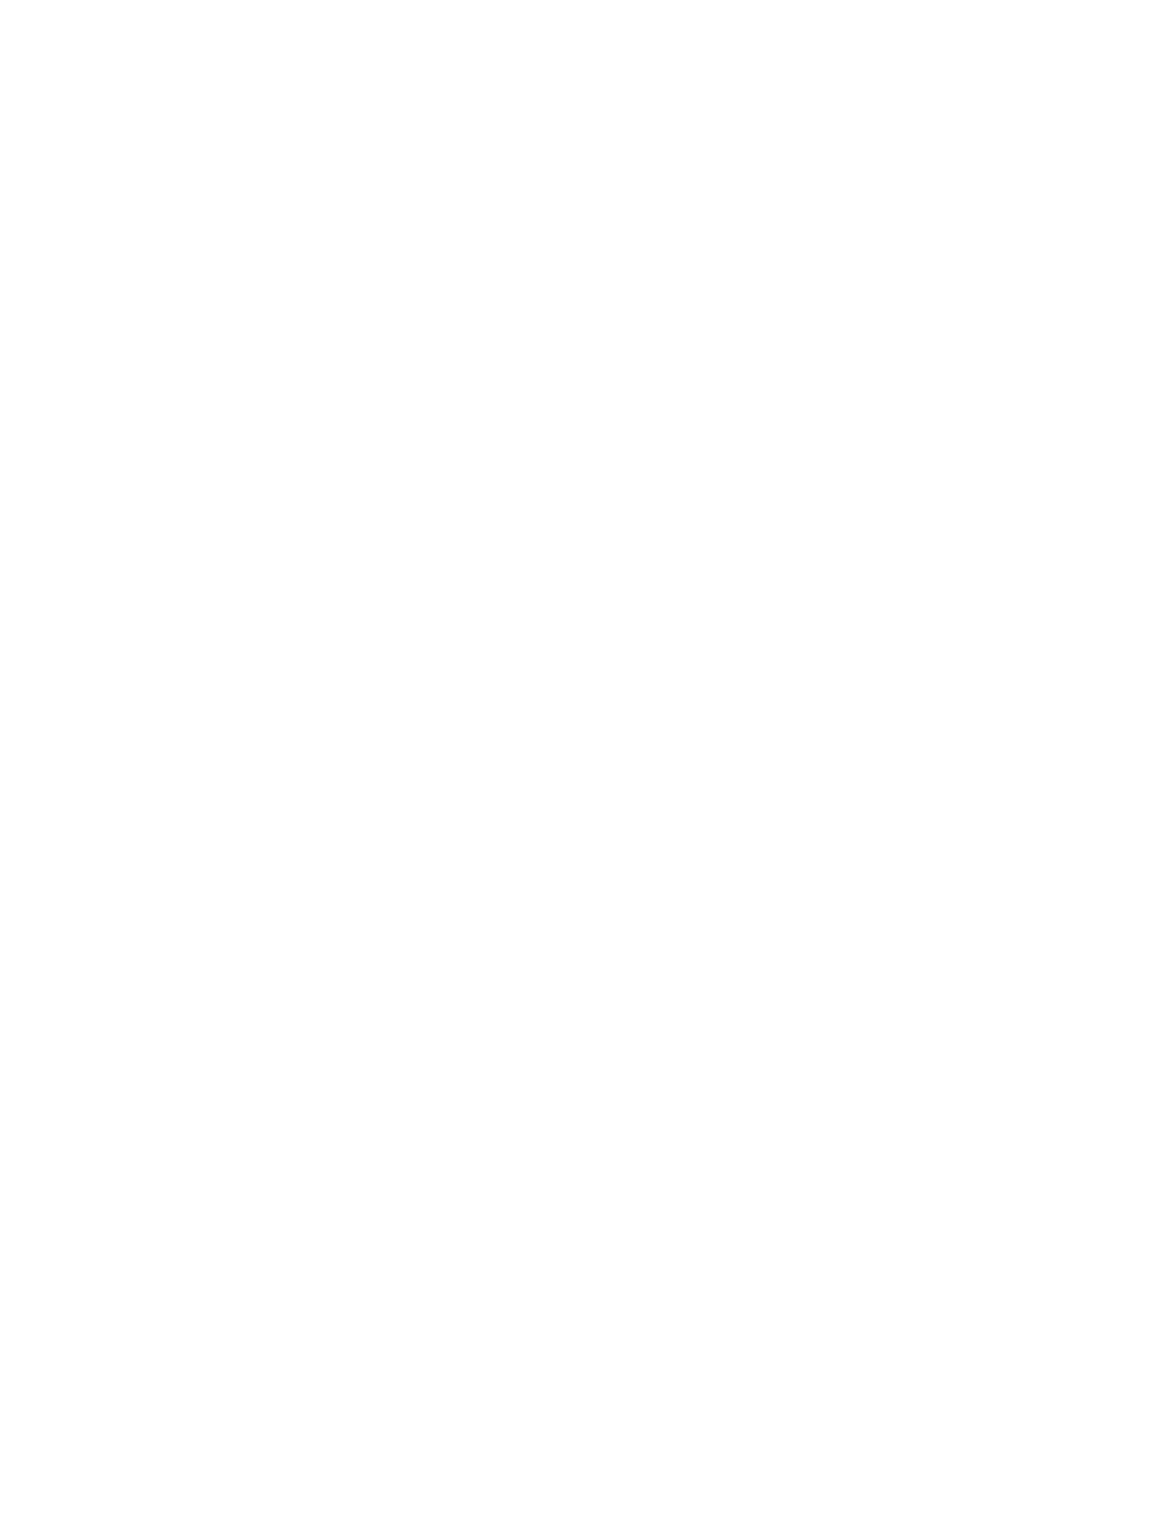 Catalent logo for dark backgrounds (transparent PNG)